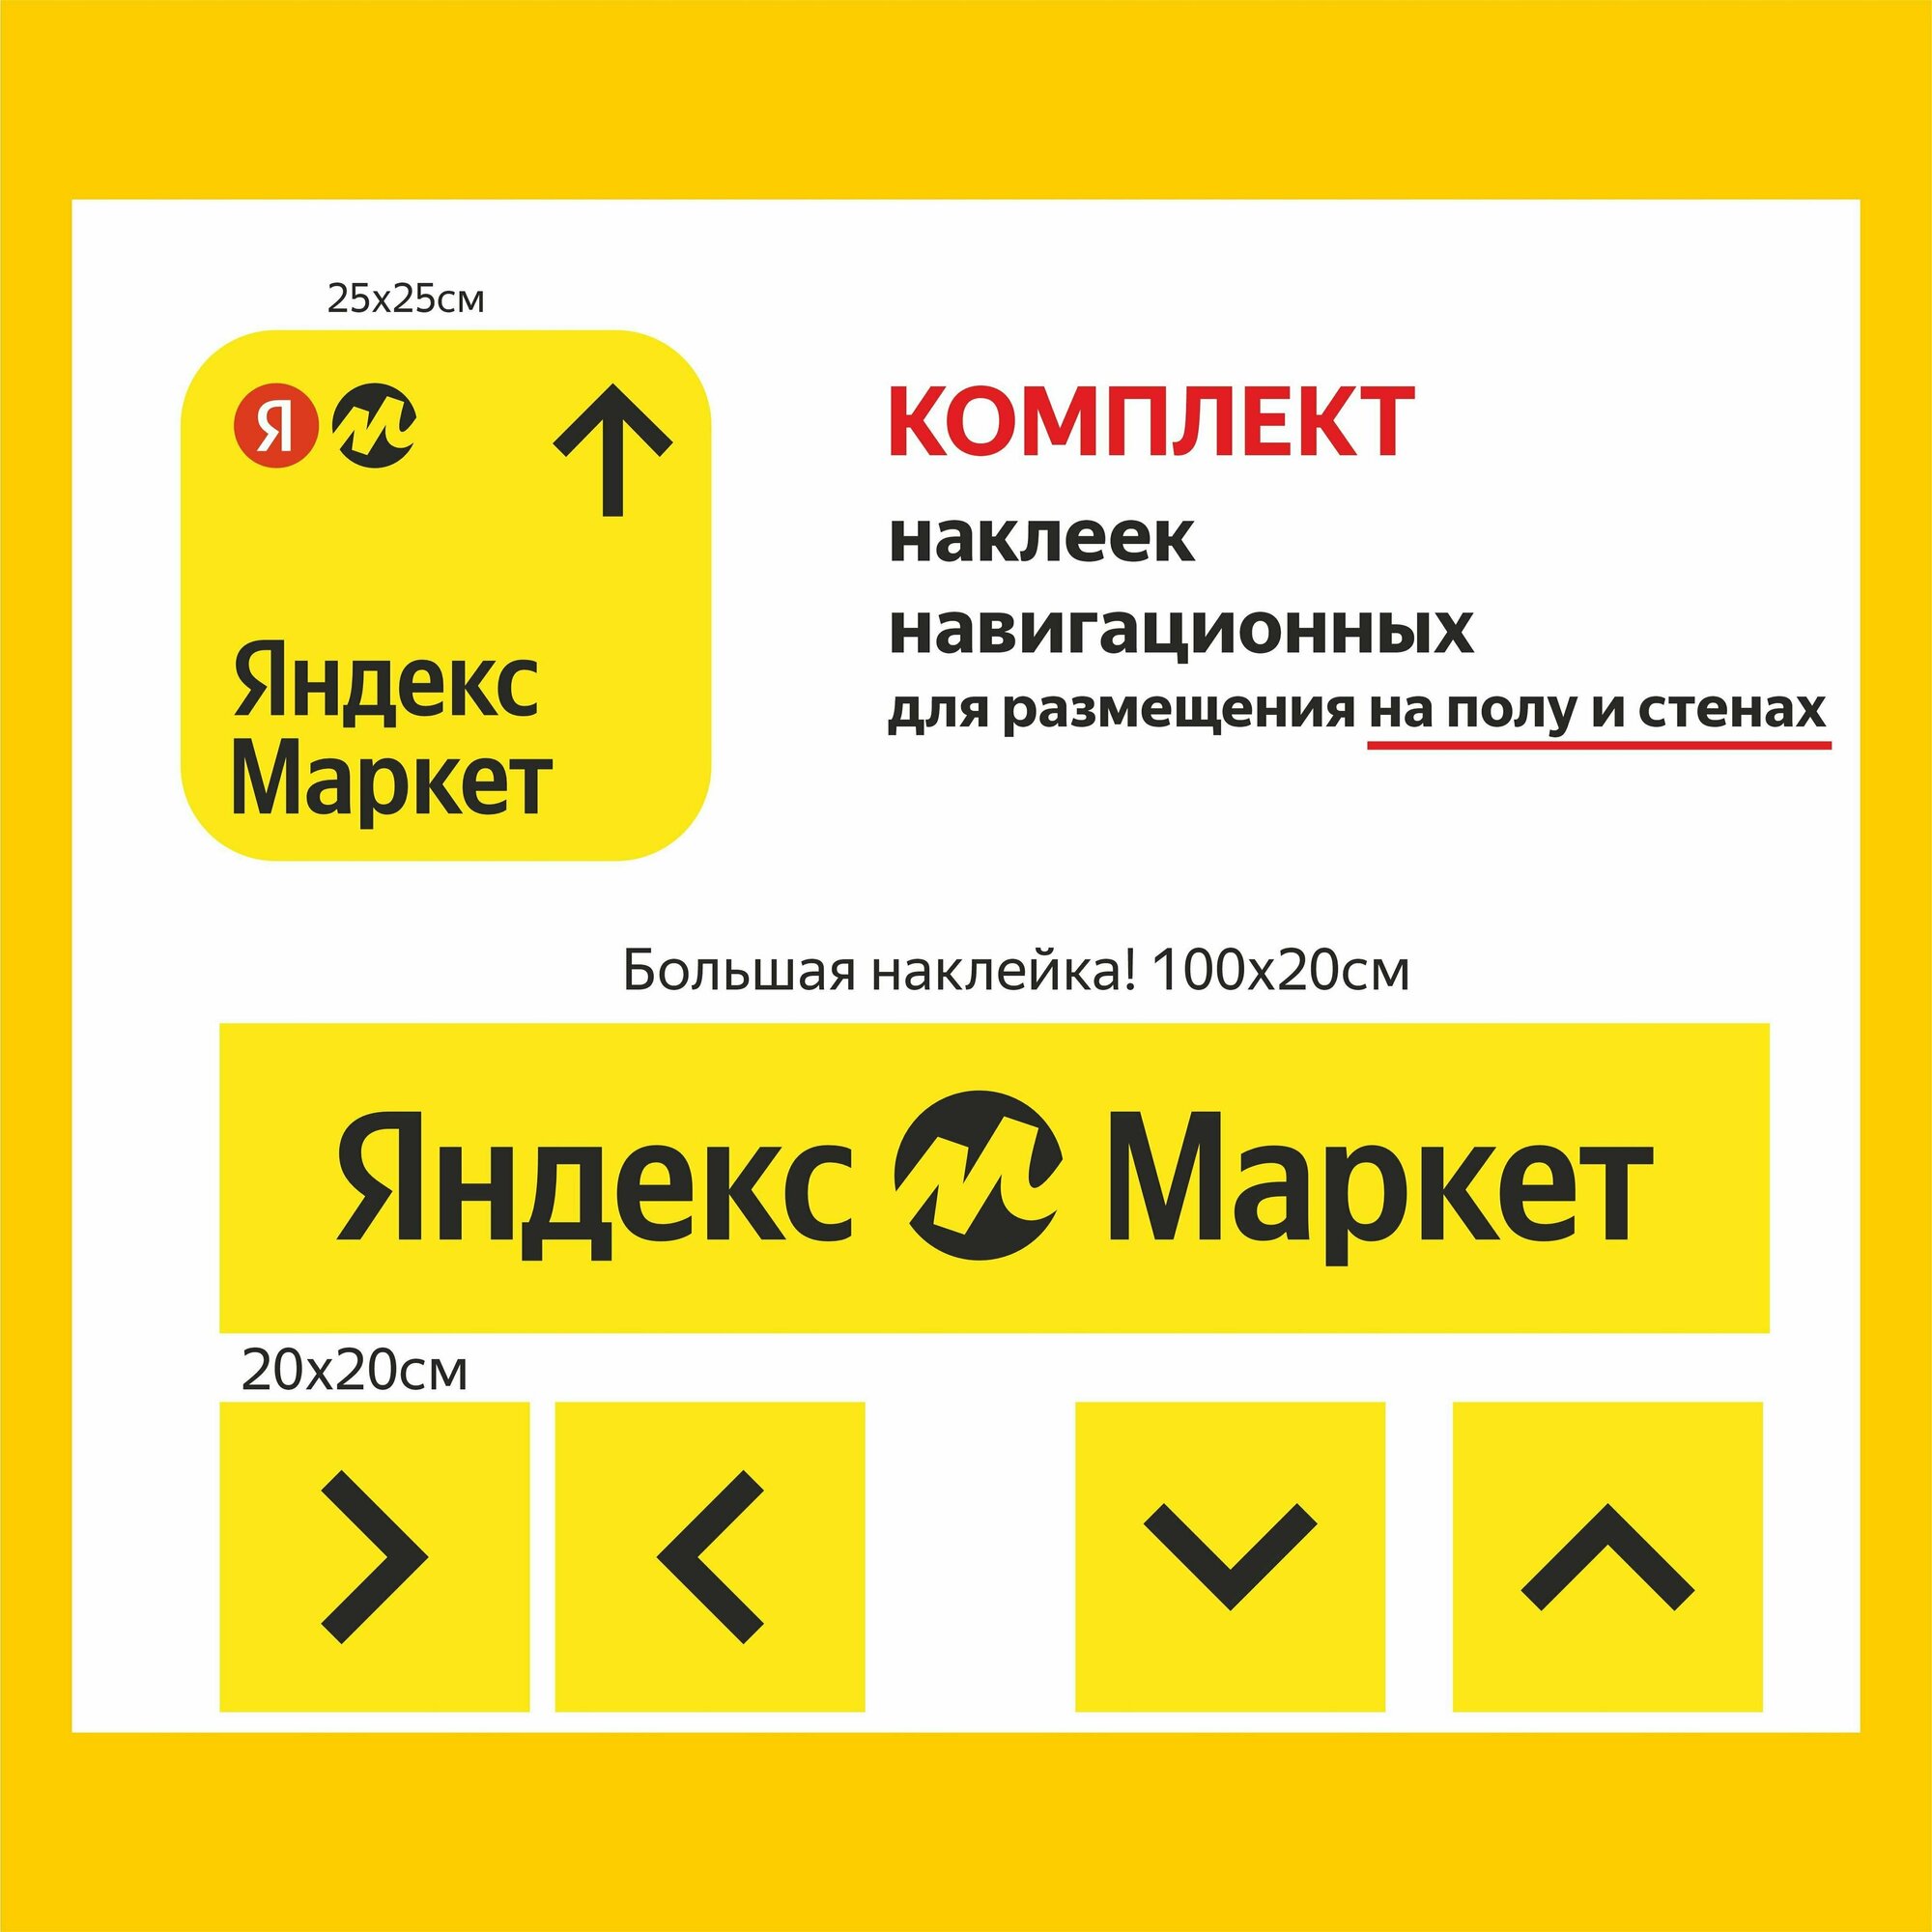 Комплект навигационных наклеек для ПВЗ Яндекс Маркет